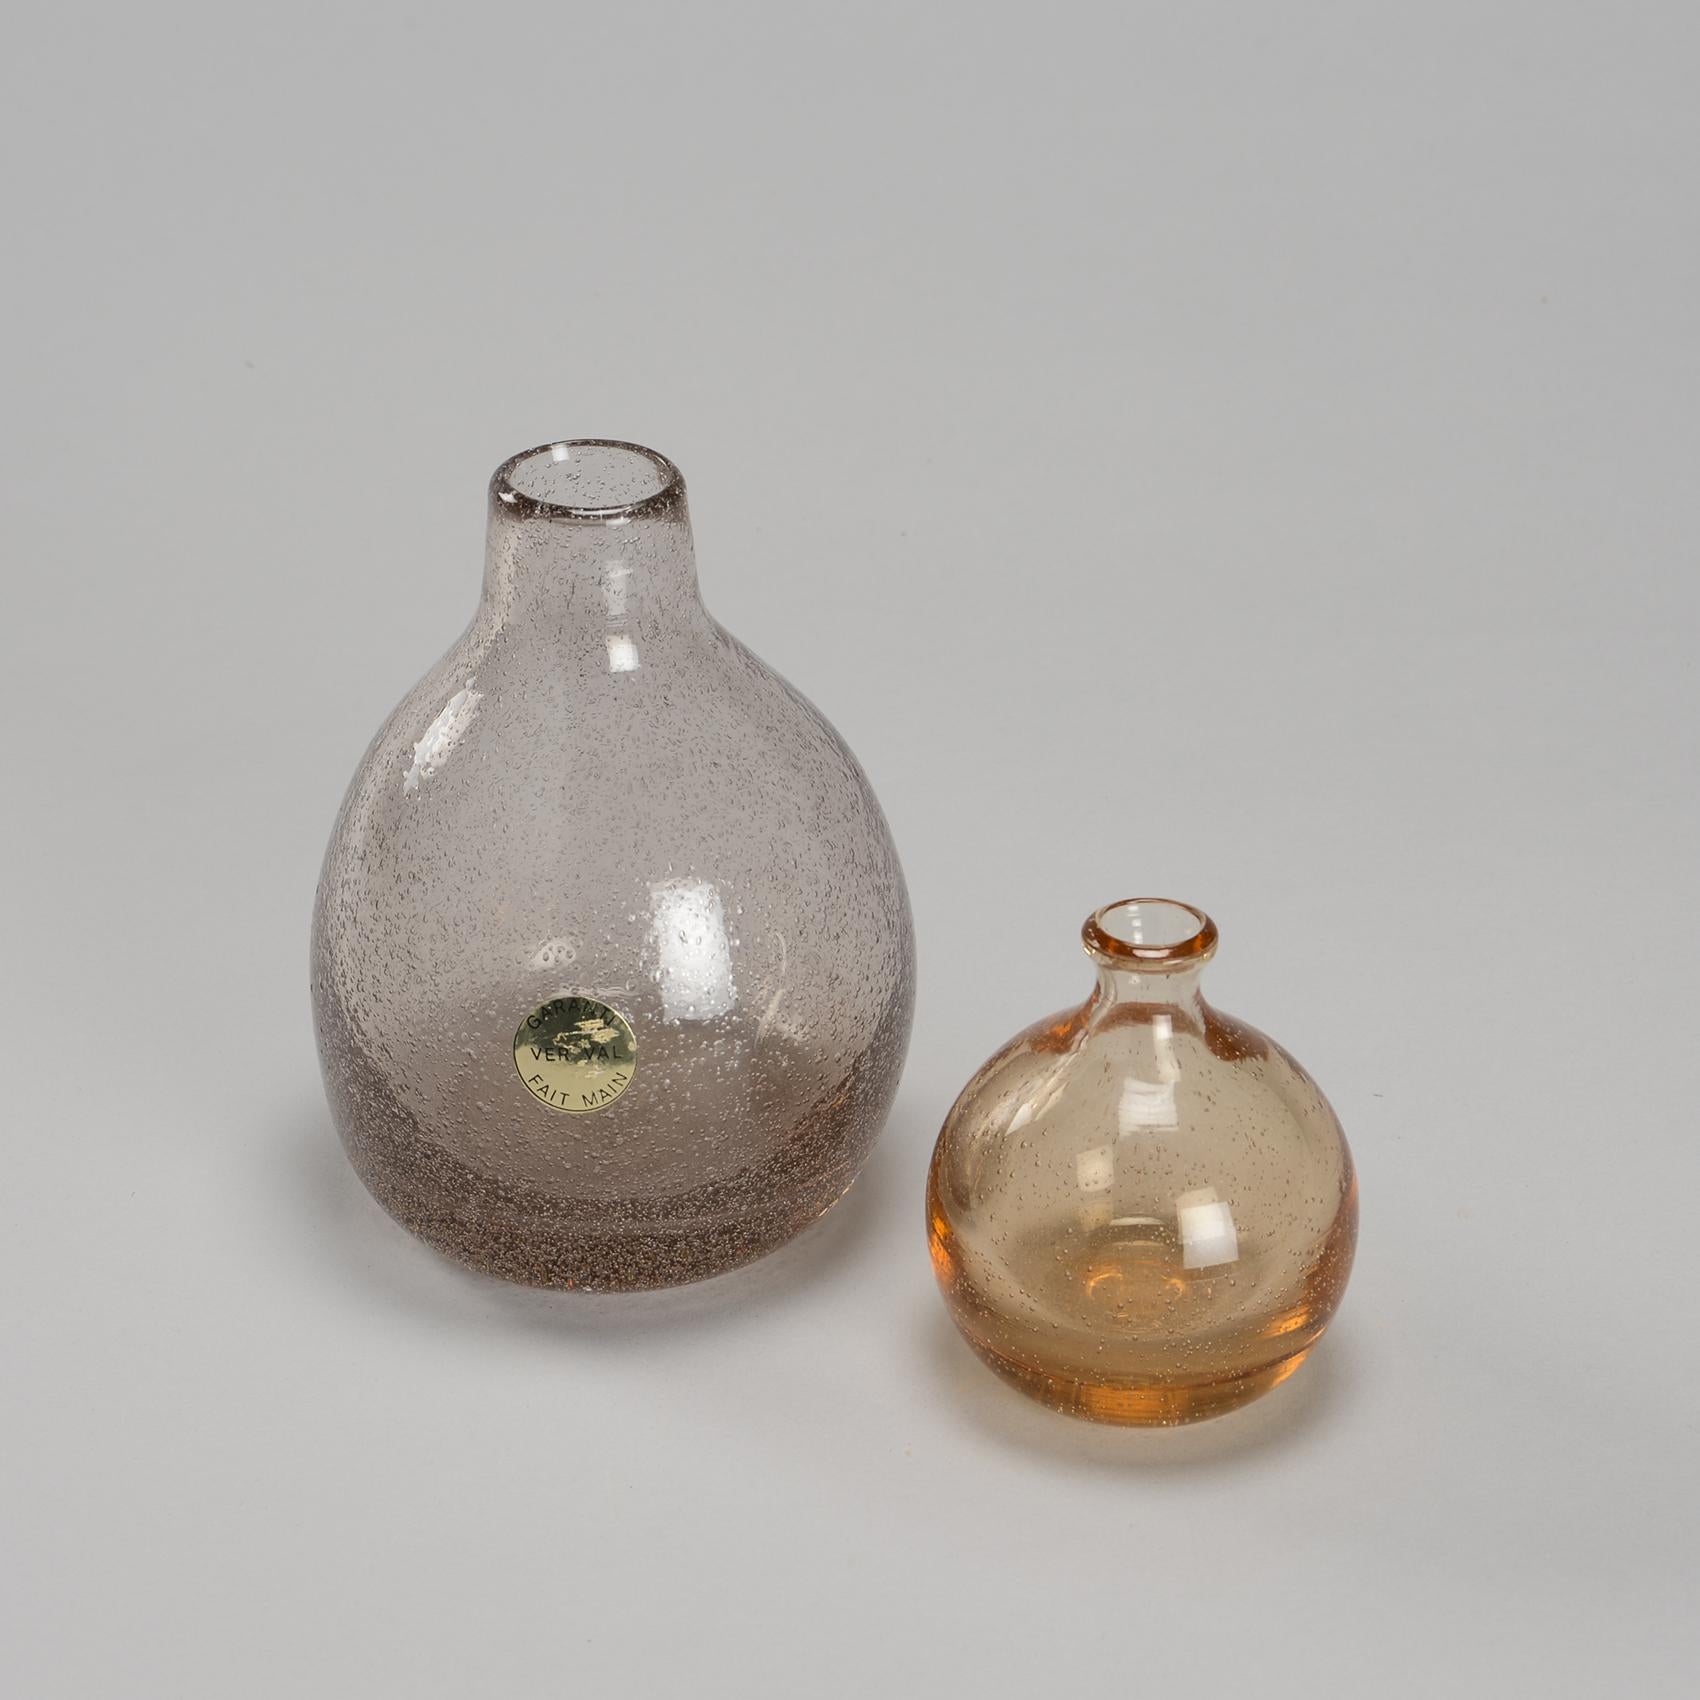 Soliflore et vase en verre épais soufflé, signé Vallauris, par Alexandre Kostanda, céramiste français, à ses débuts dans la verrerie. Ces pièces sont assez rares.

Petit vase : 4.3 